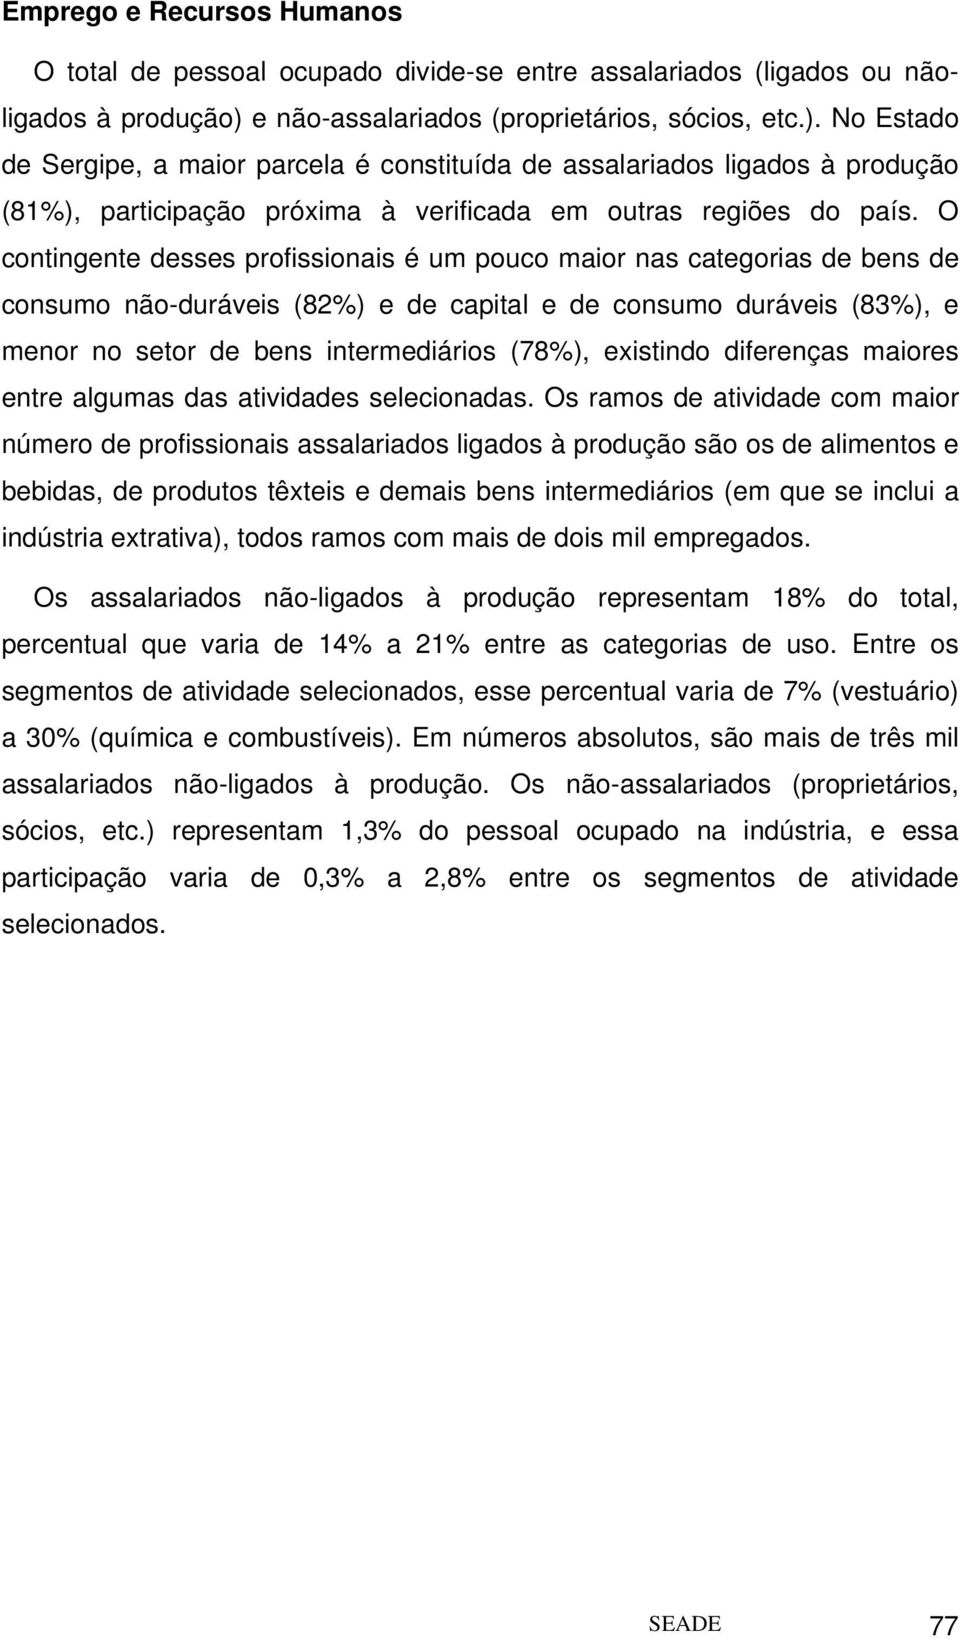 No Estado de Sergipe, a maior parcela é constituída de assalariados ligados à produção (81%), participação próxima à verificada em outras regiões do país.